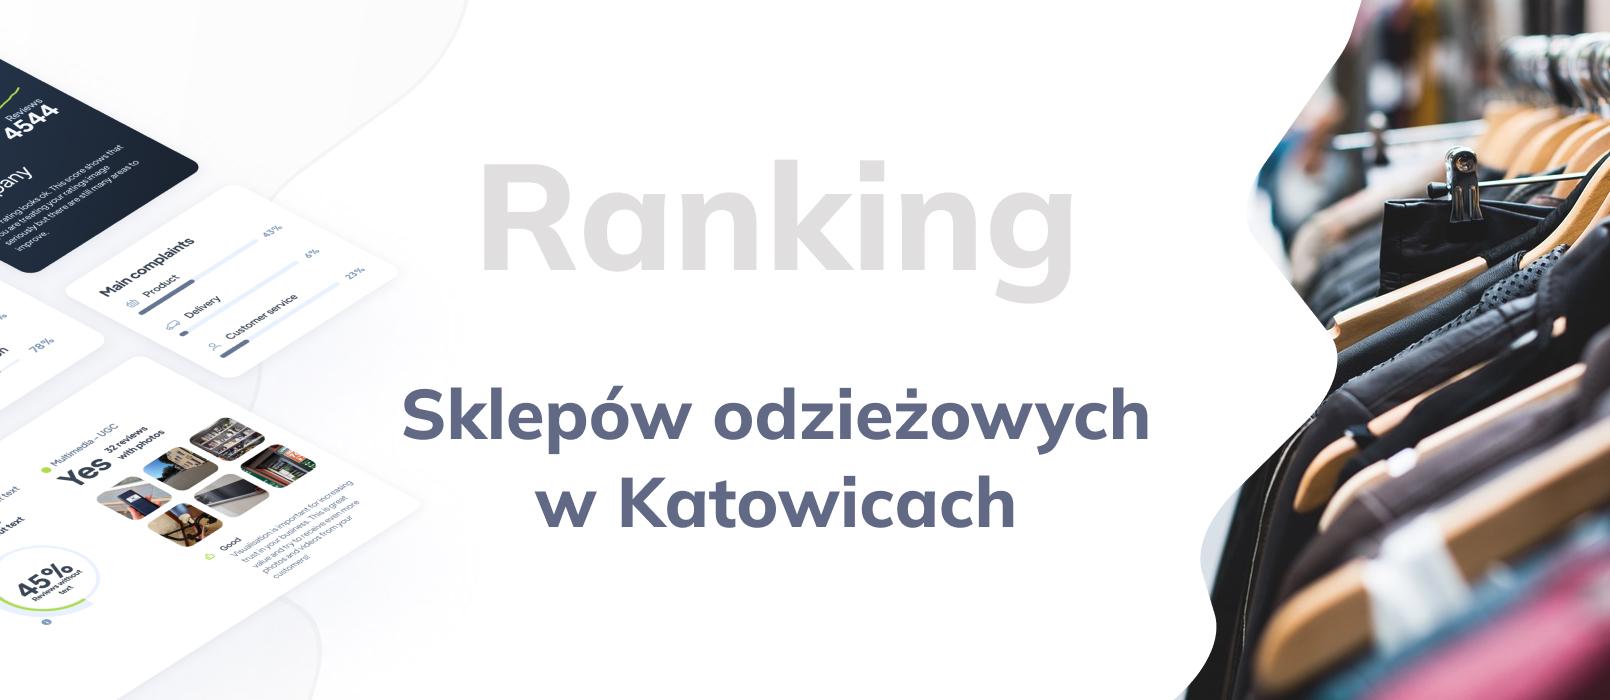 Sklepy odzieżowe w Katowicach - ranking TOP 10